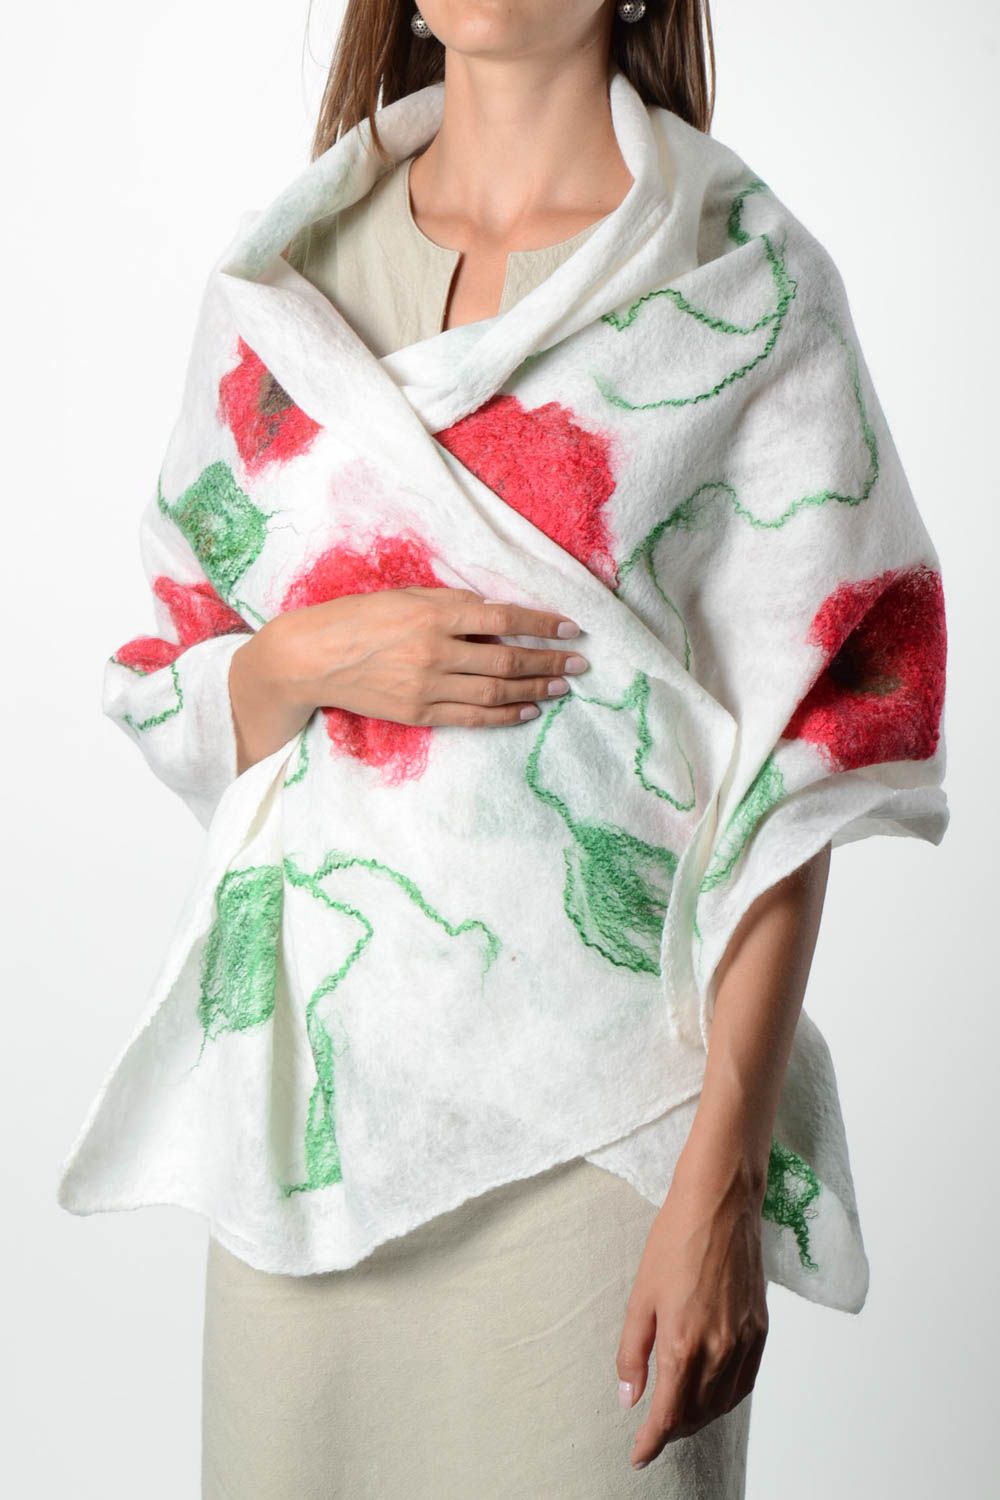 Женский шарф палантин ручной работы валяный палантин из шерсти белый в цветы фото 1